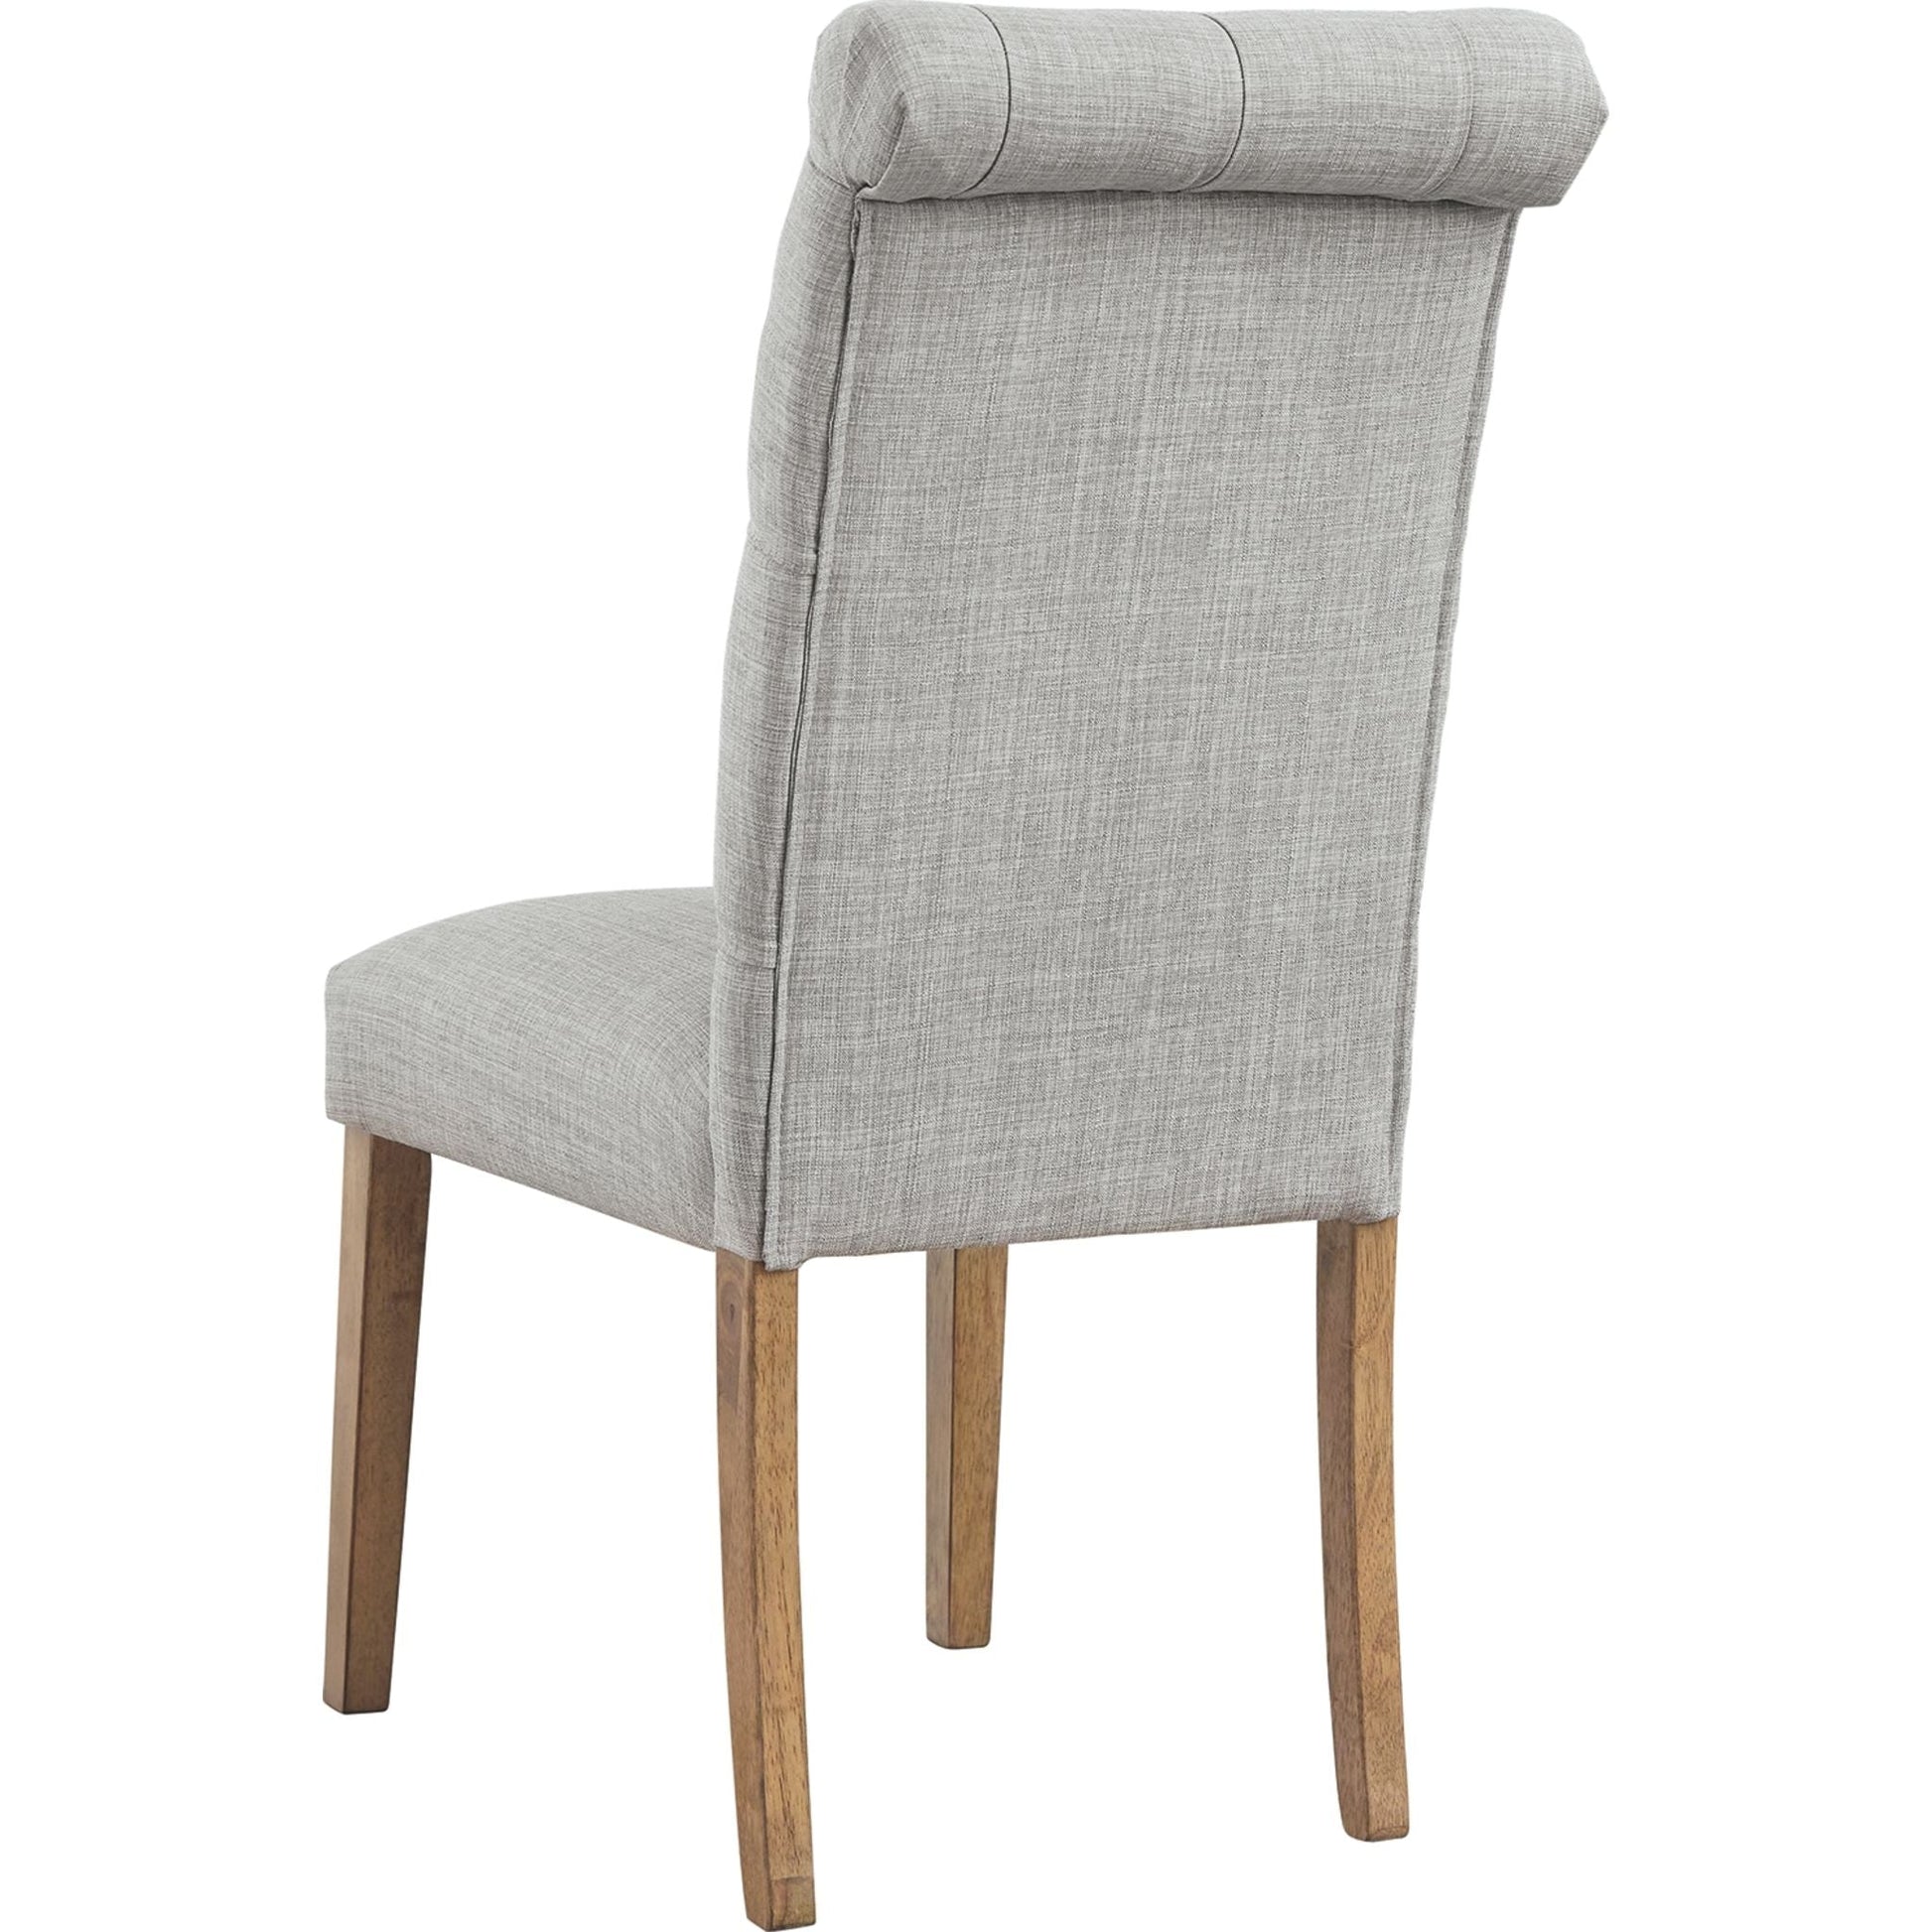 Harvina Upholstered Side Chair - Light Gray - (D324-02)